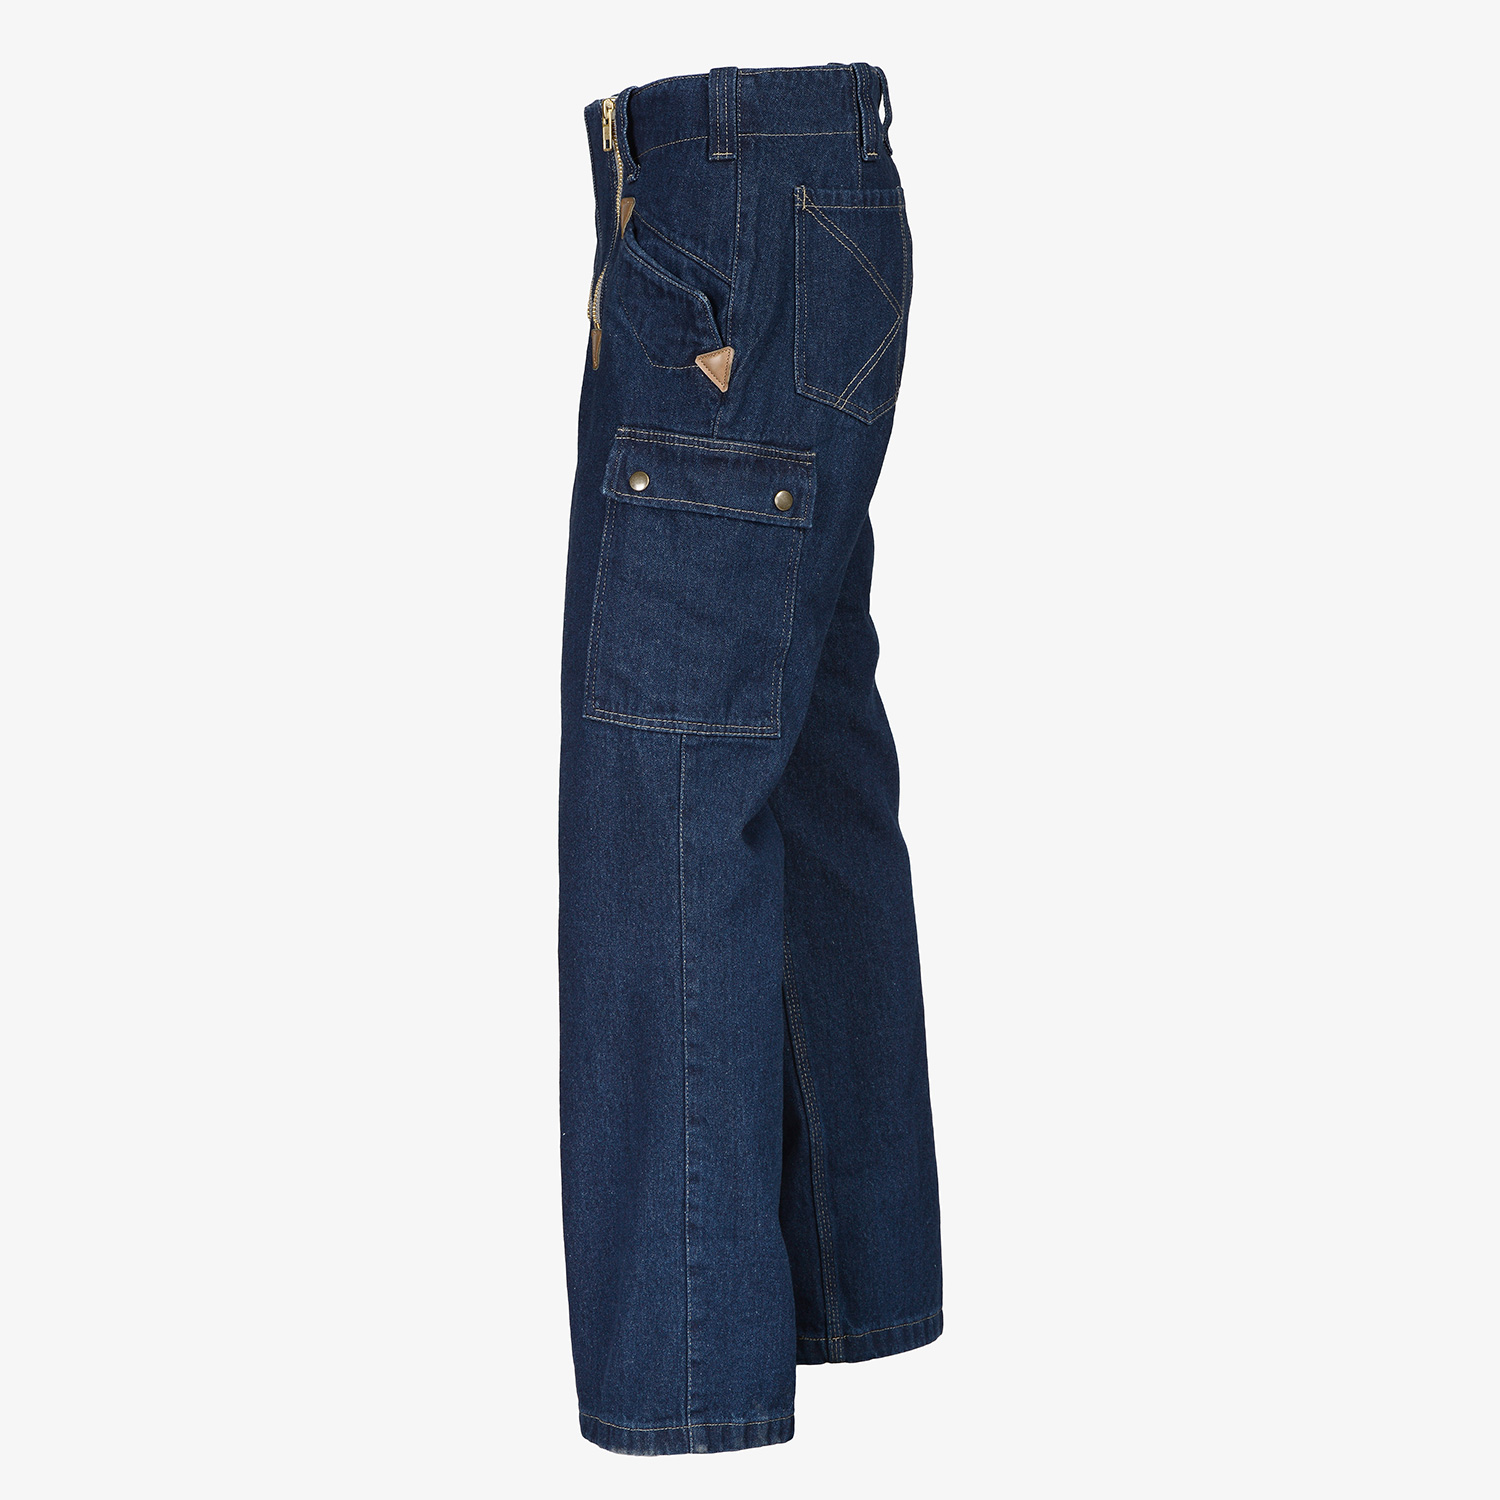 KRÄHE guild jeans without bell bottom